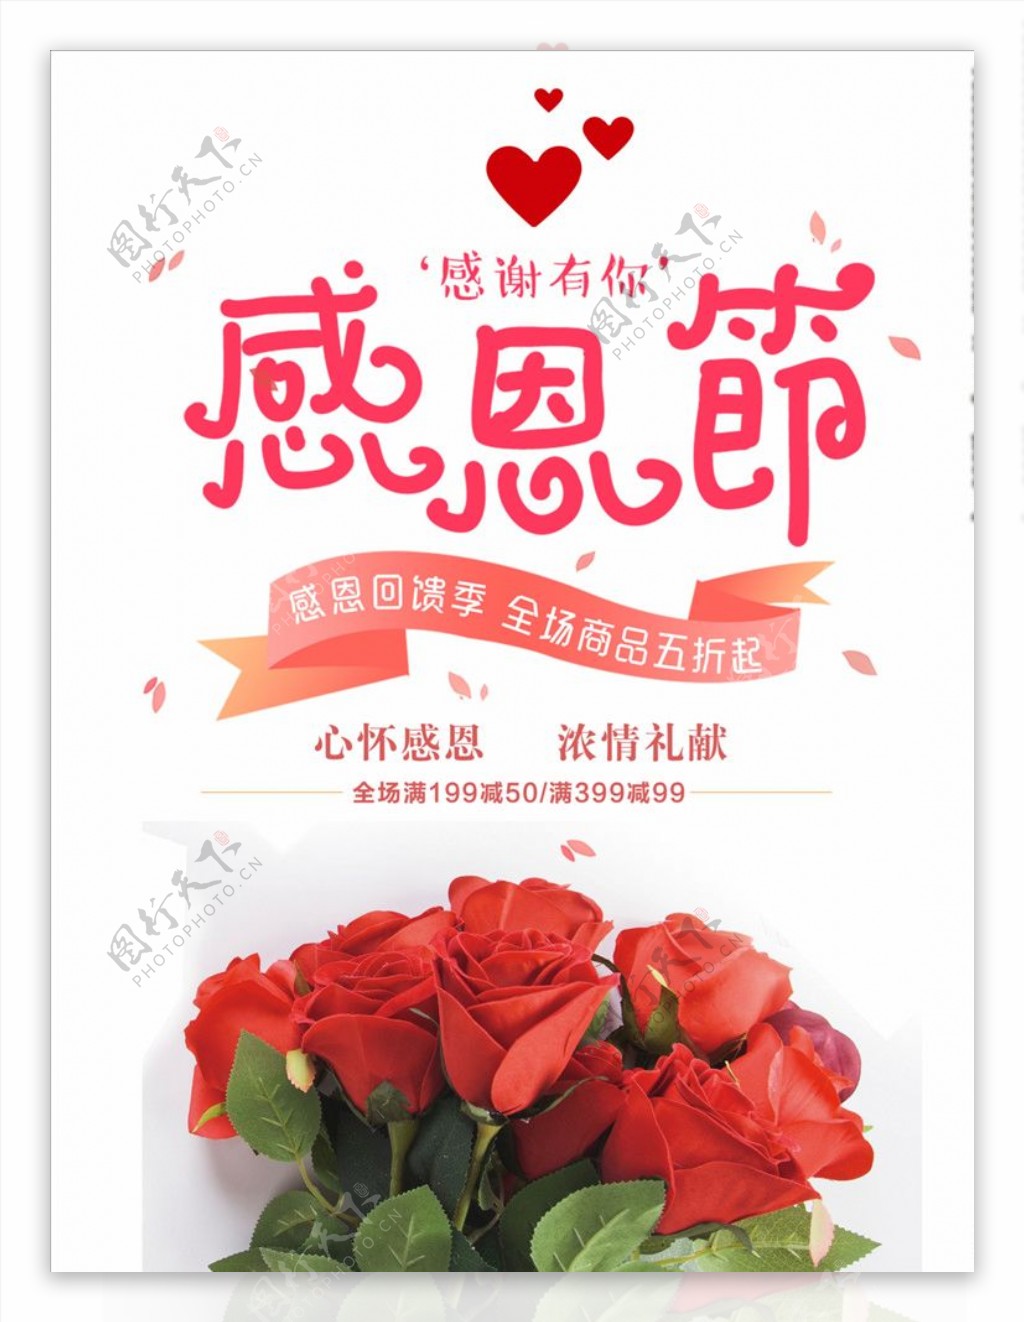 感恩节大回馈玫瑰花束海报